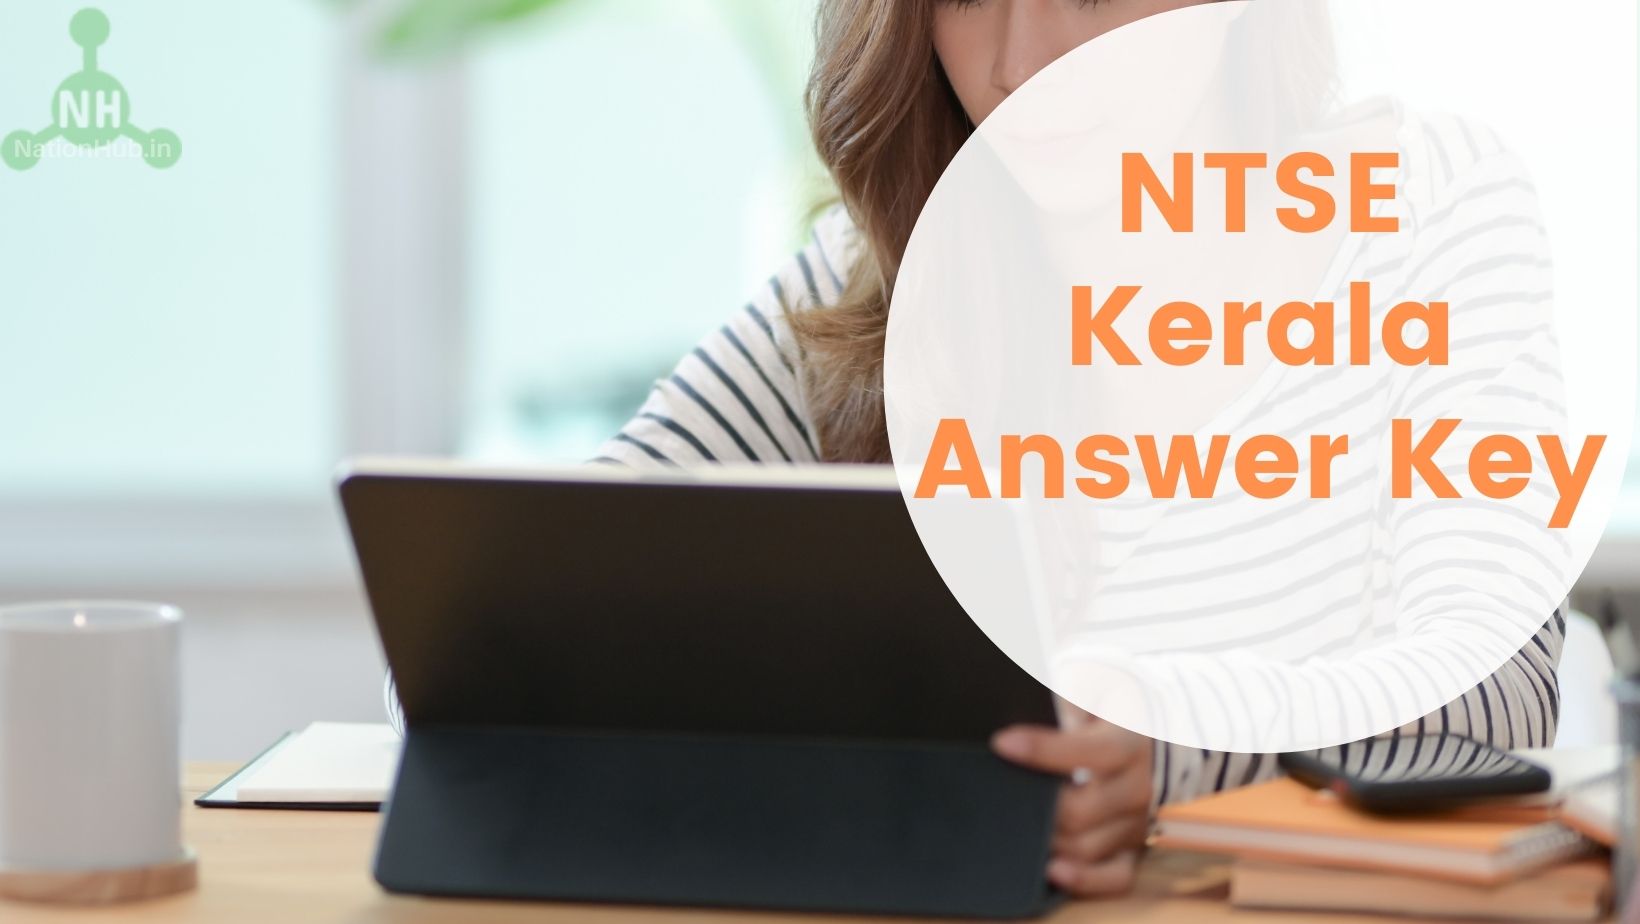 NTSE Kerala Answer Key Featured Image